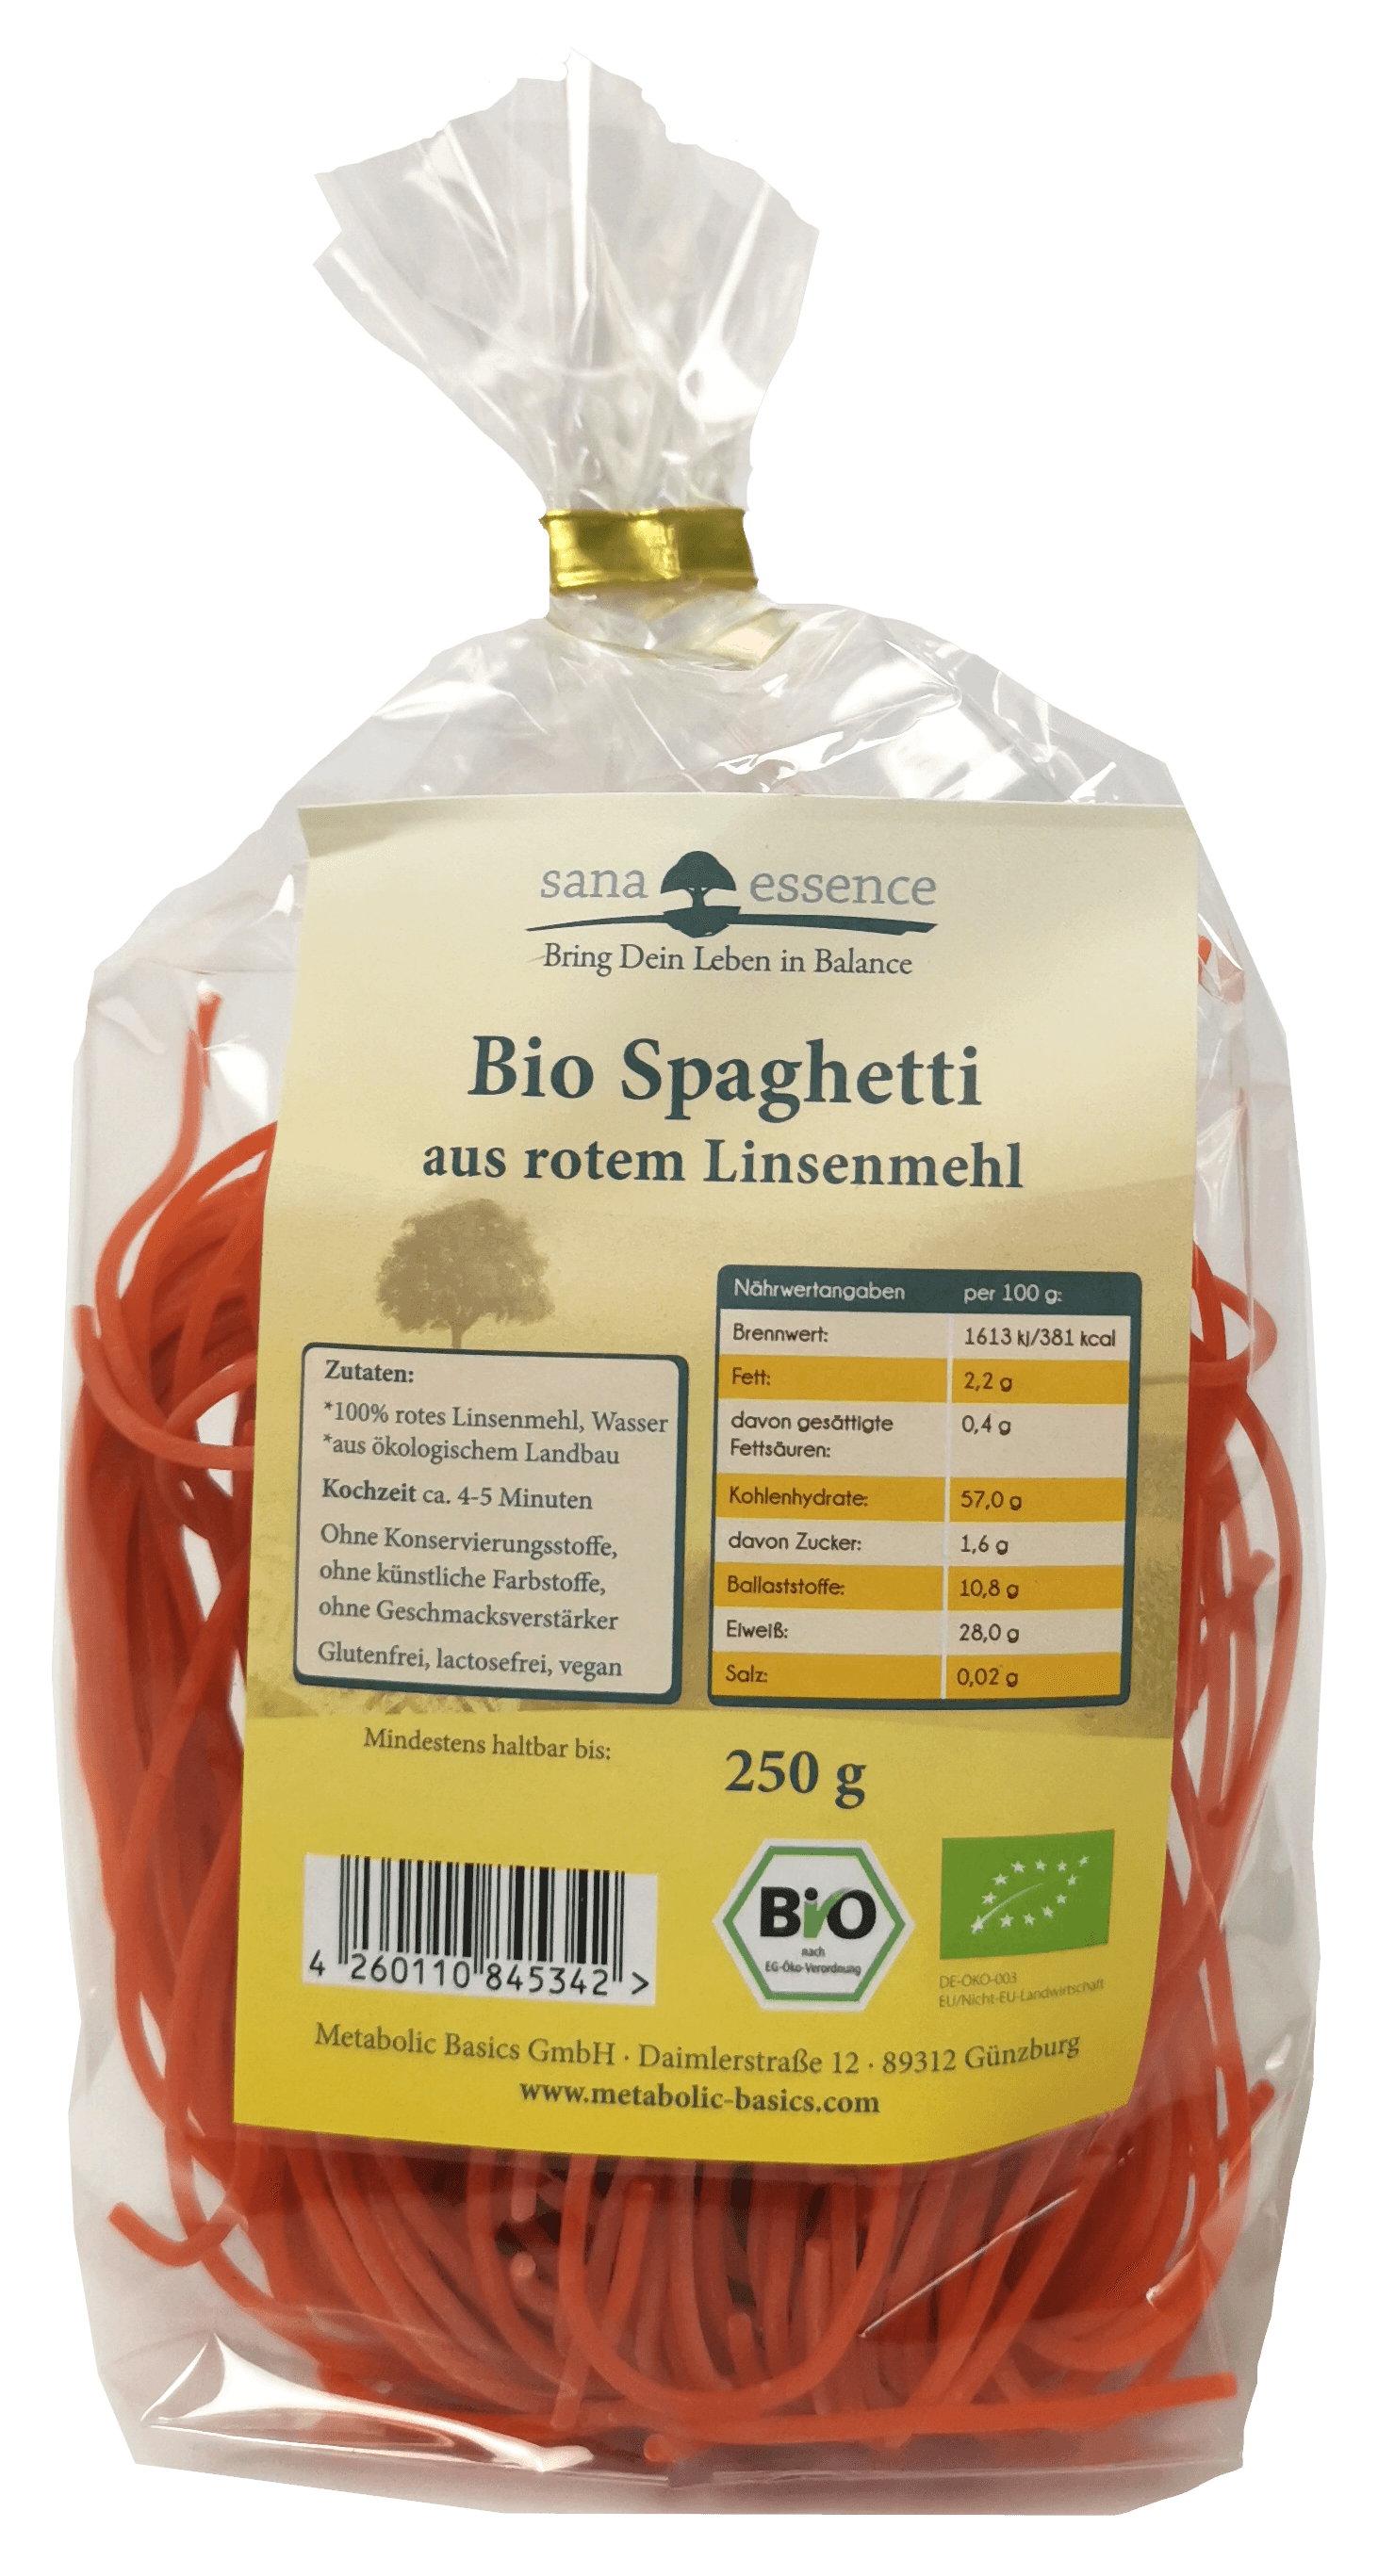 Bio Spaghetti aus rotem Linsenmehl